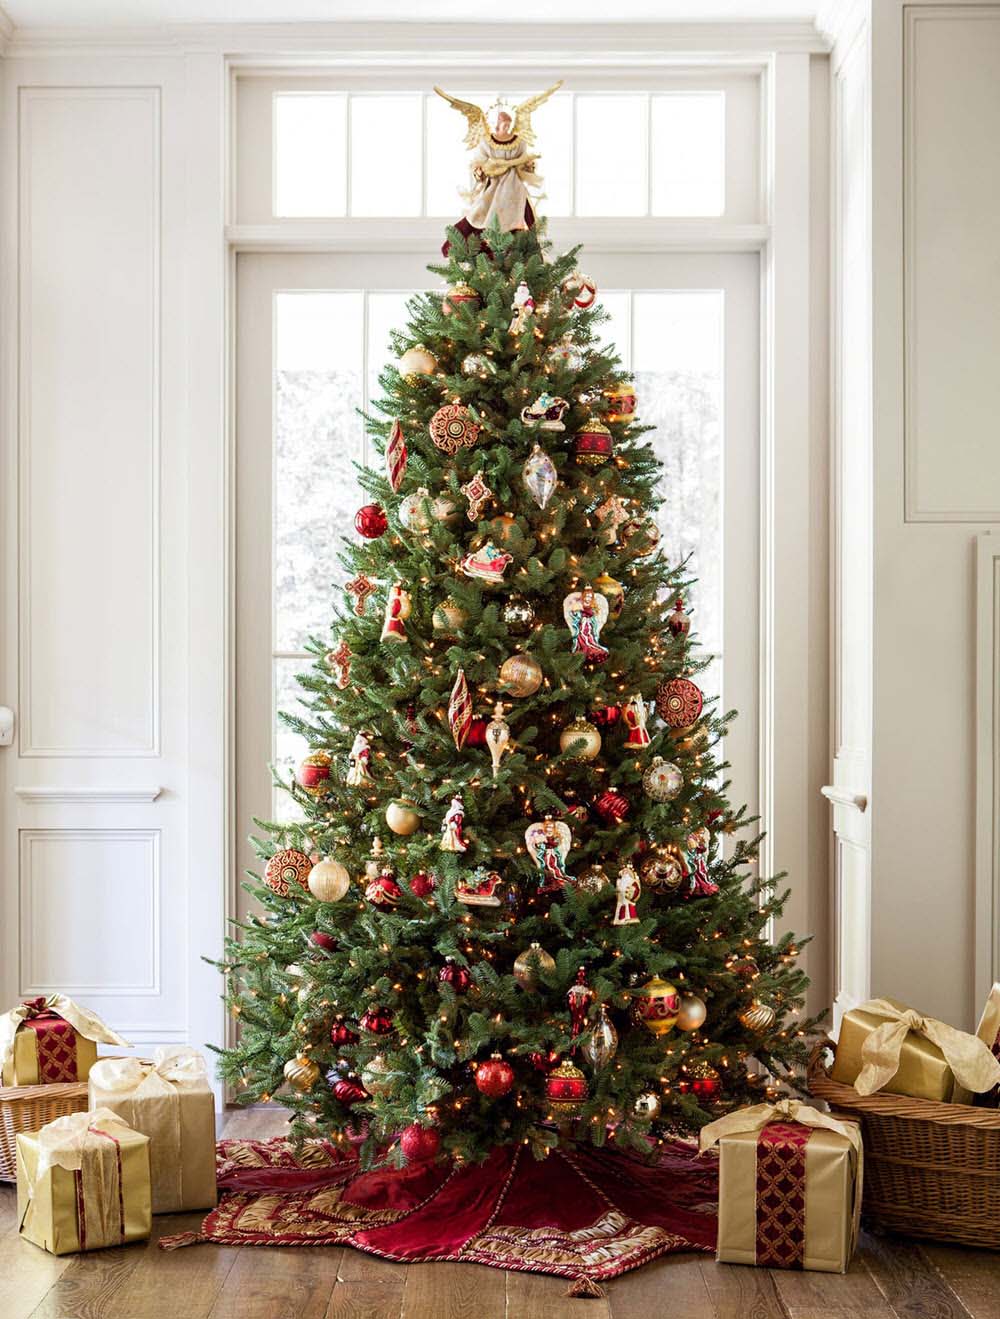 Hình cây thông Noel trang trí đẹp nhất giáng sinh